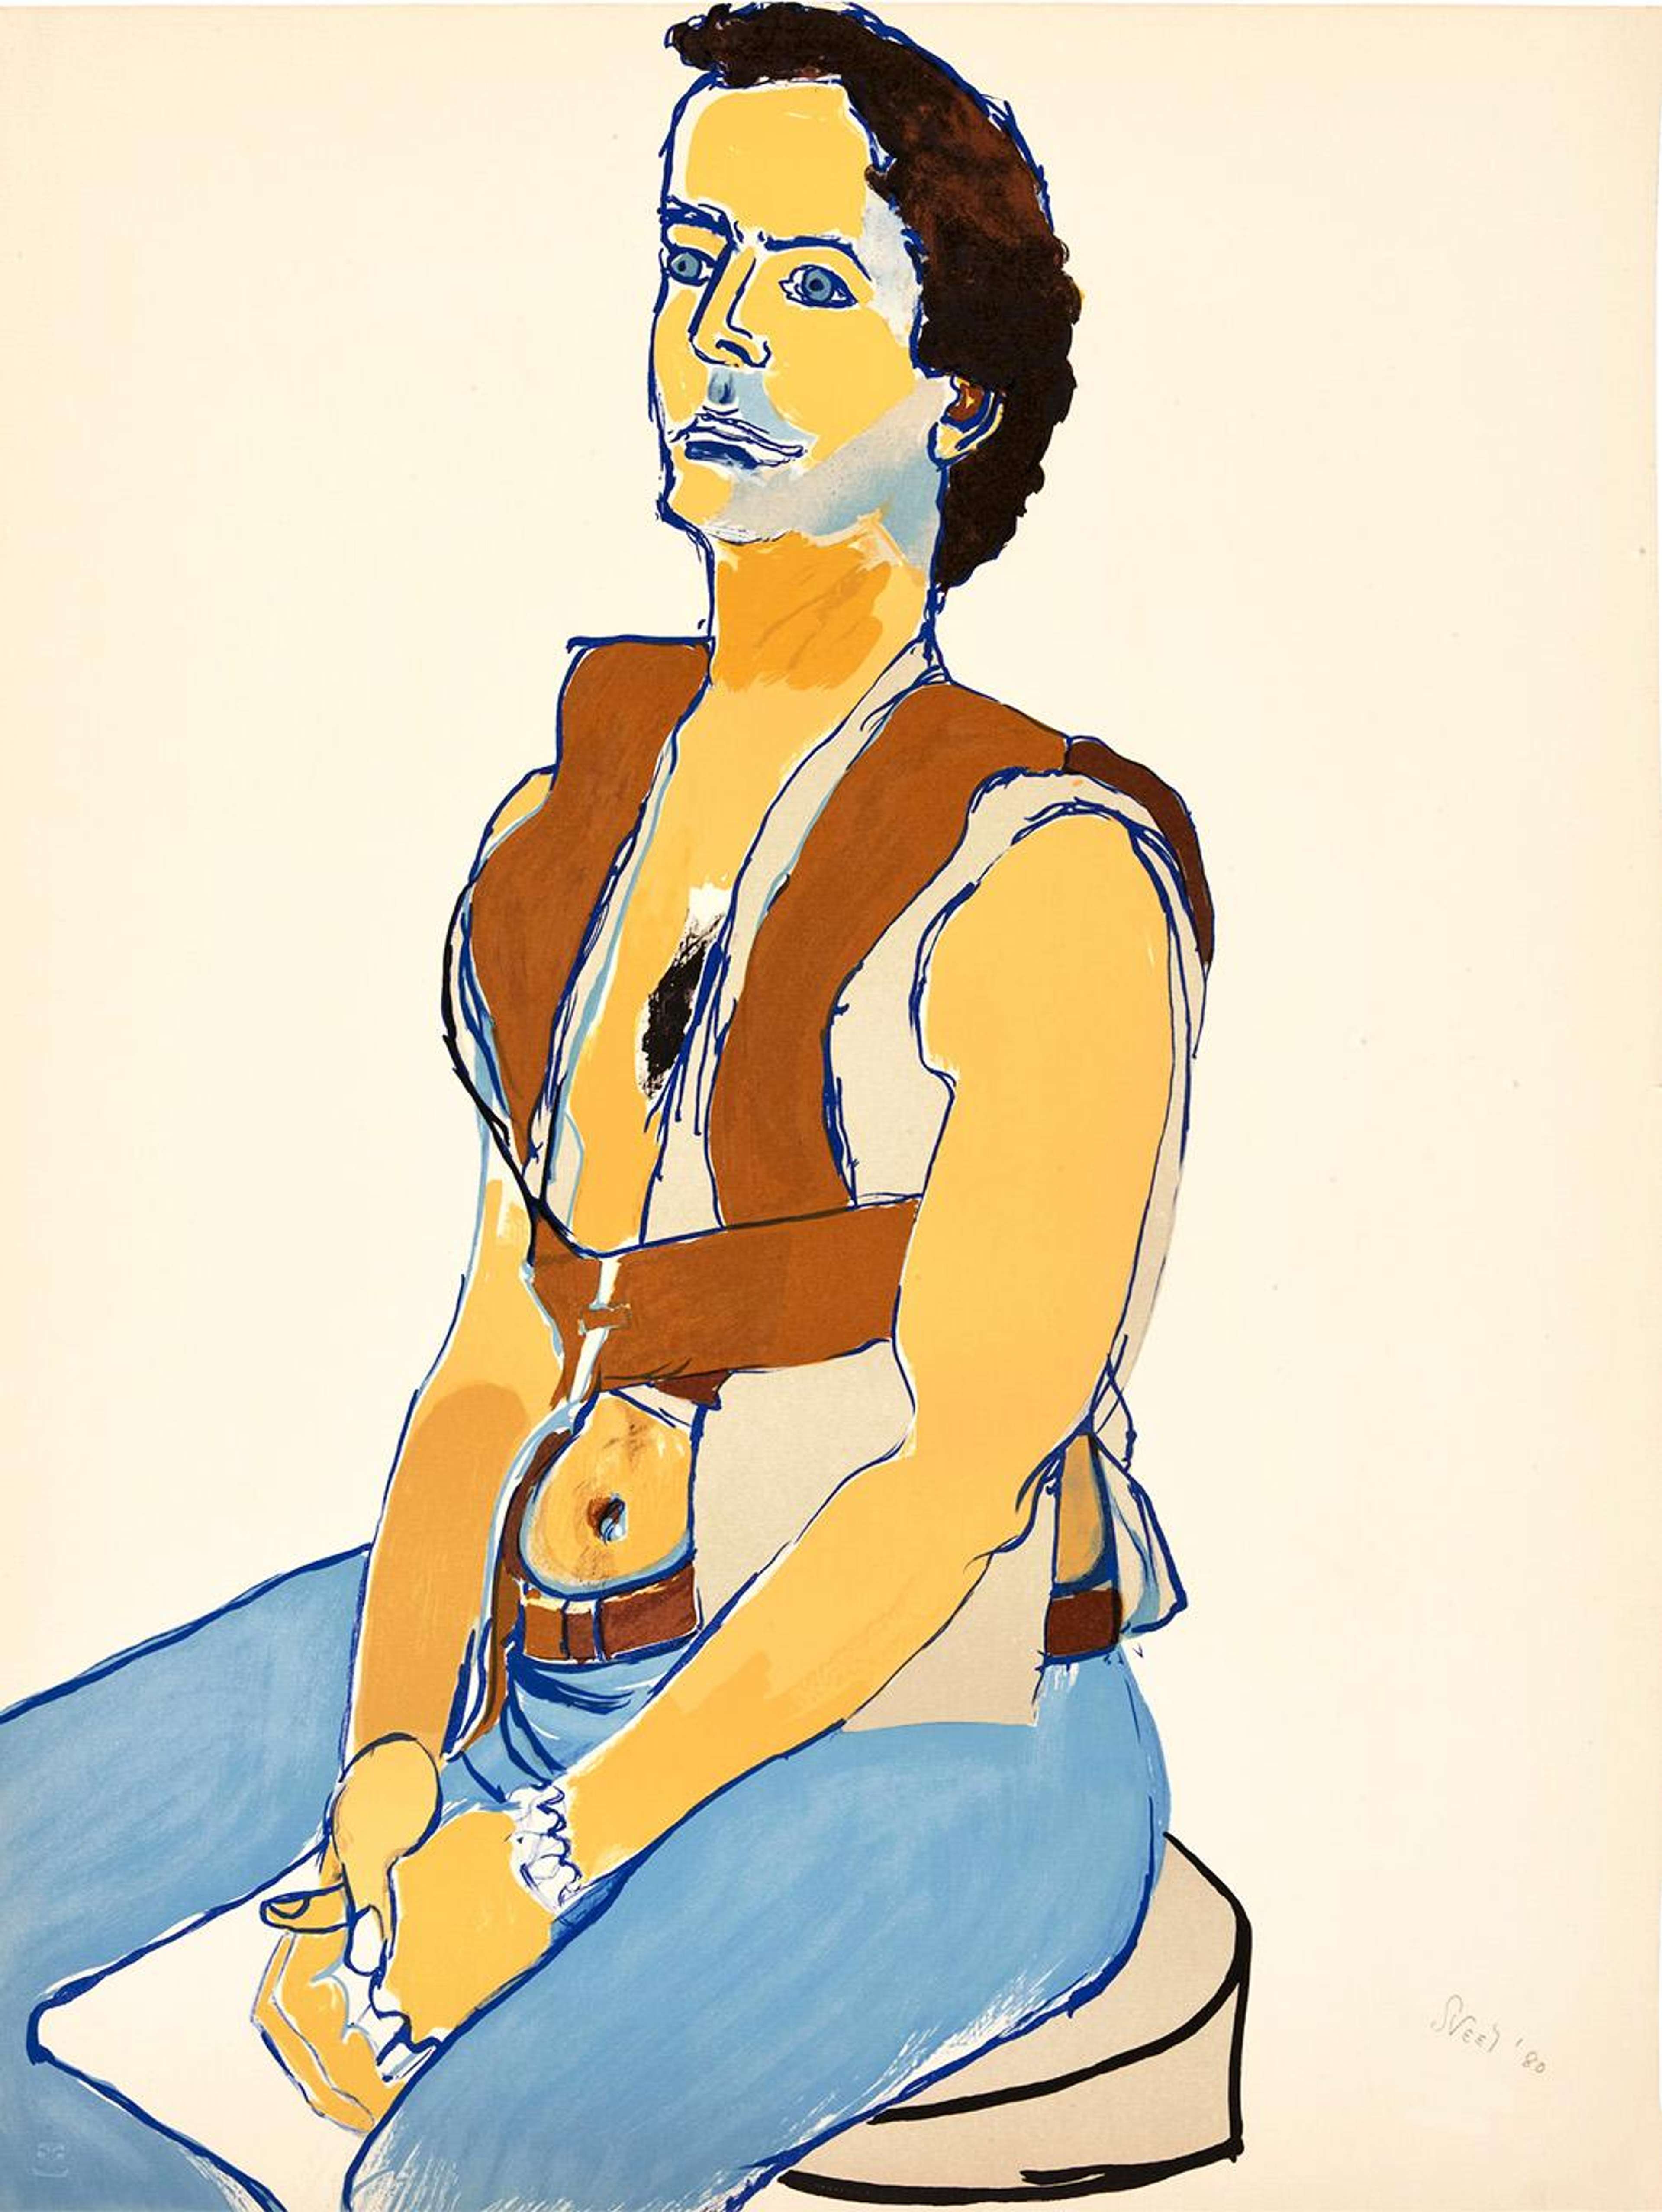 Man In Harness - Signed Print by Alice Neel 1980 - MyArtBroker